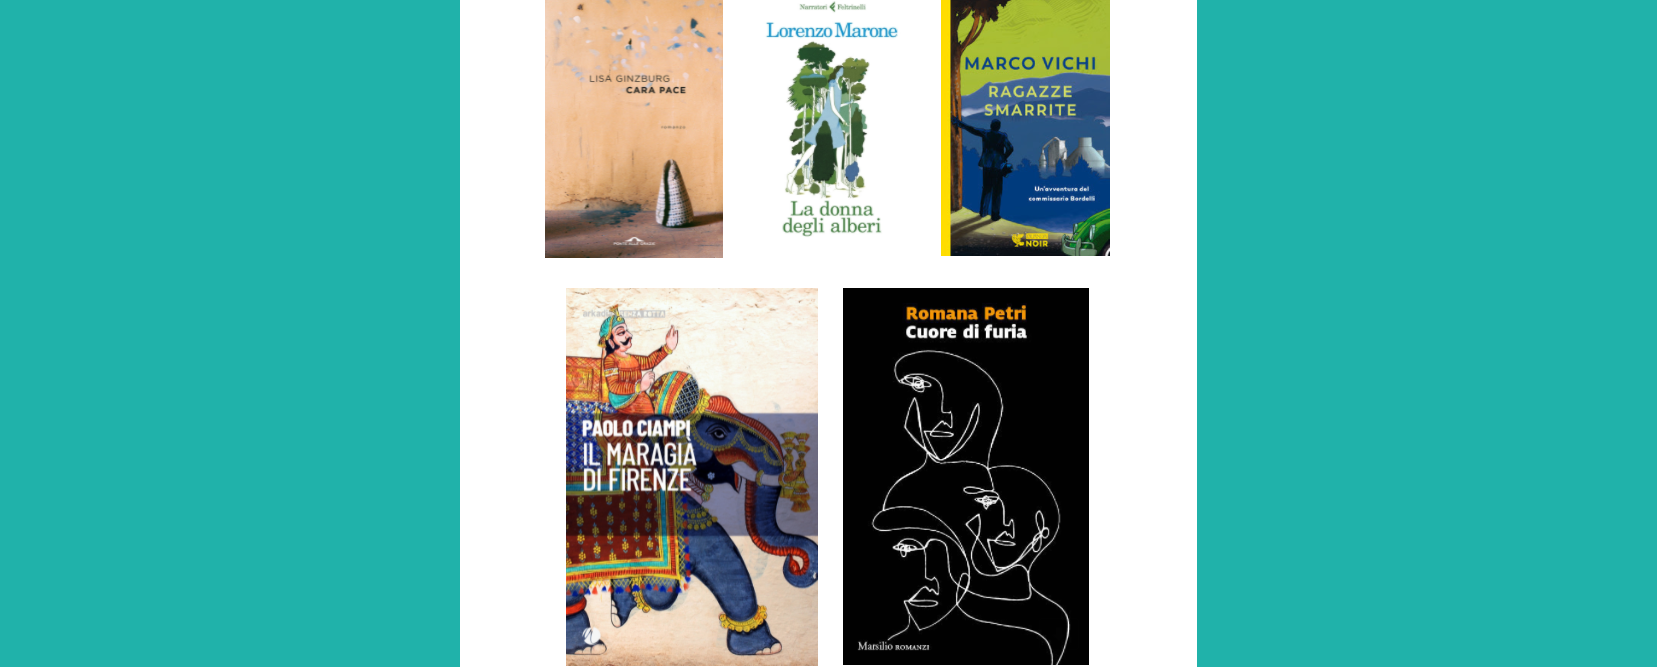 Ecco i cinque finalisti del 34° Premio letterario Chianti